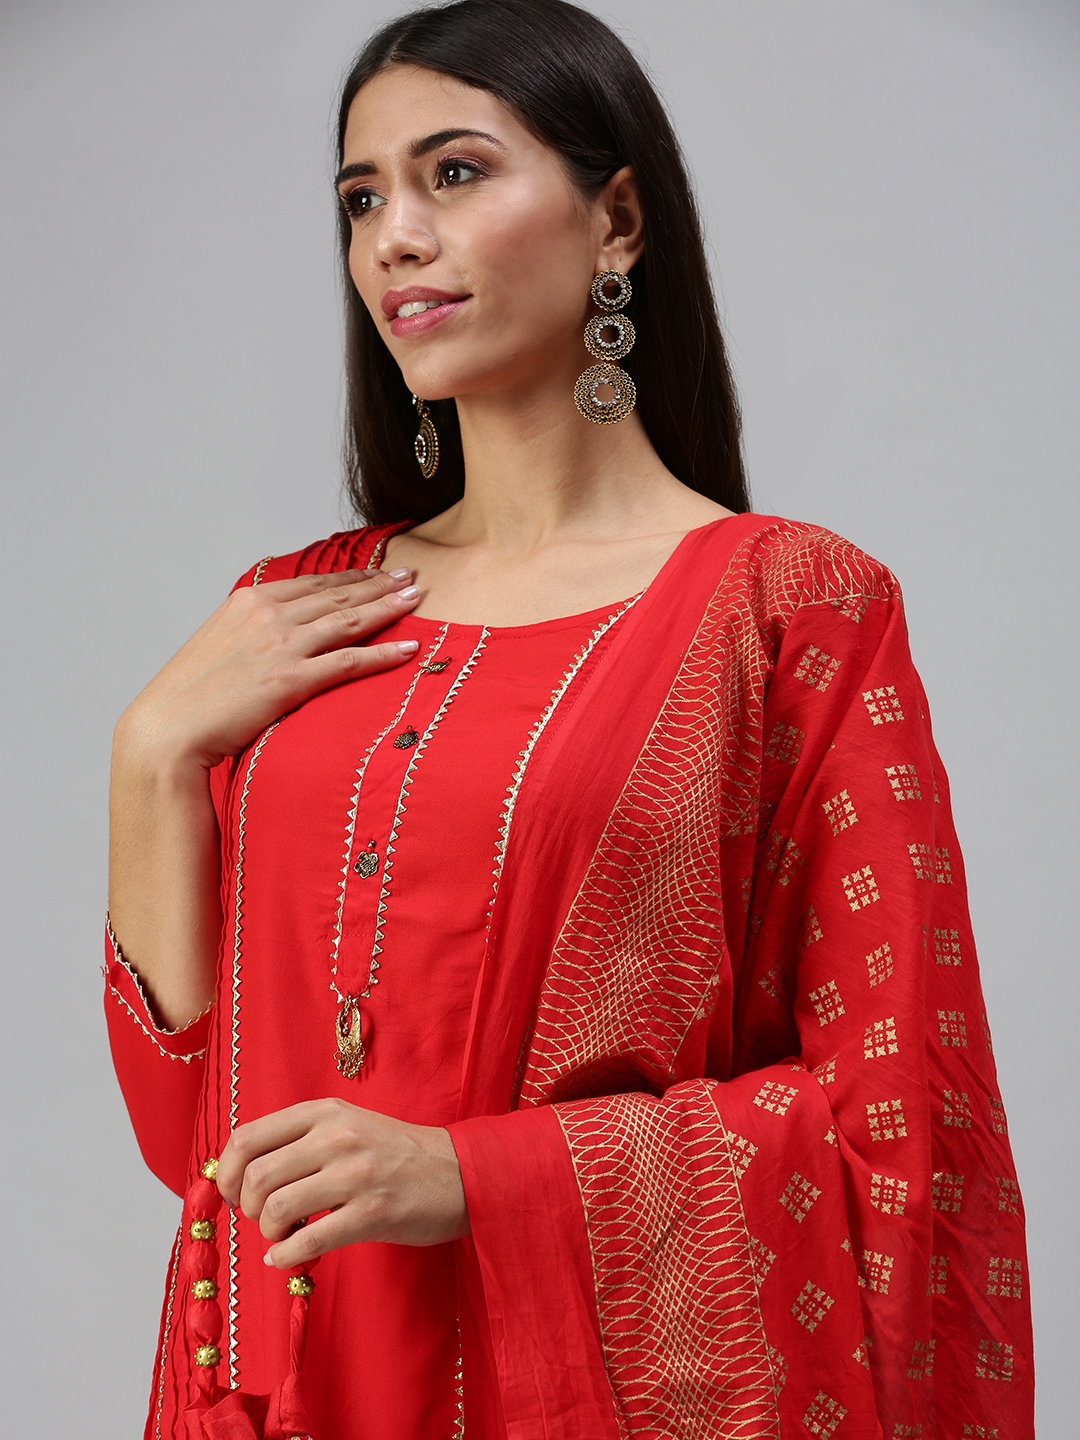 Women's Red Cotton Blend Solid Regular Kurta Sets